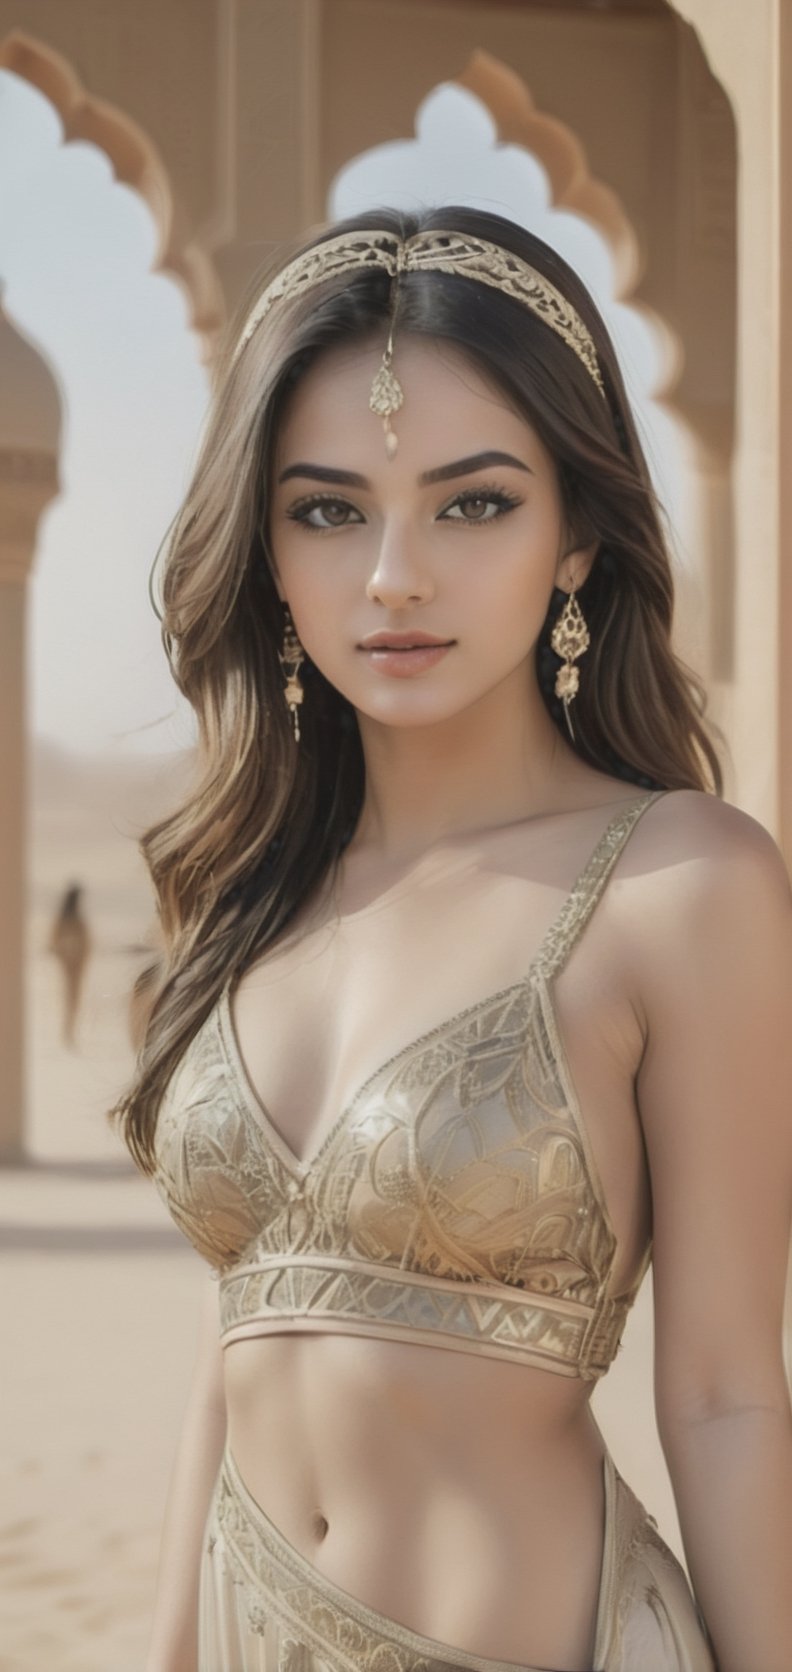 beautiful Arabian 25 yo women, alula background , sexy loock, detailface, wearing Arabian dress,full body, inst4 style,aesthetic portrait, 